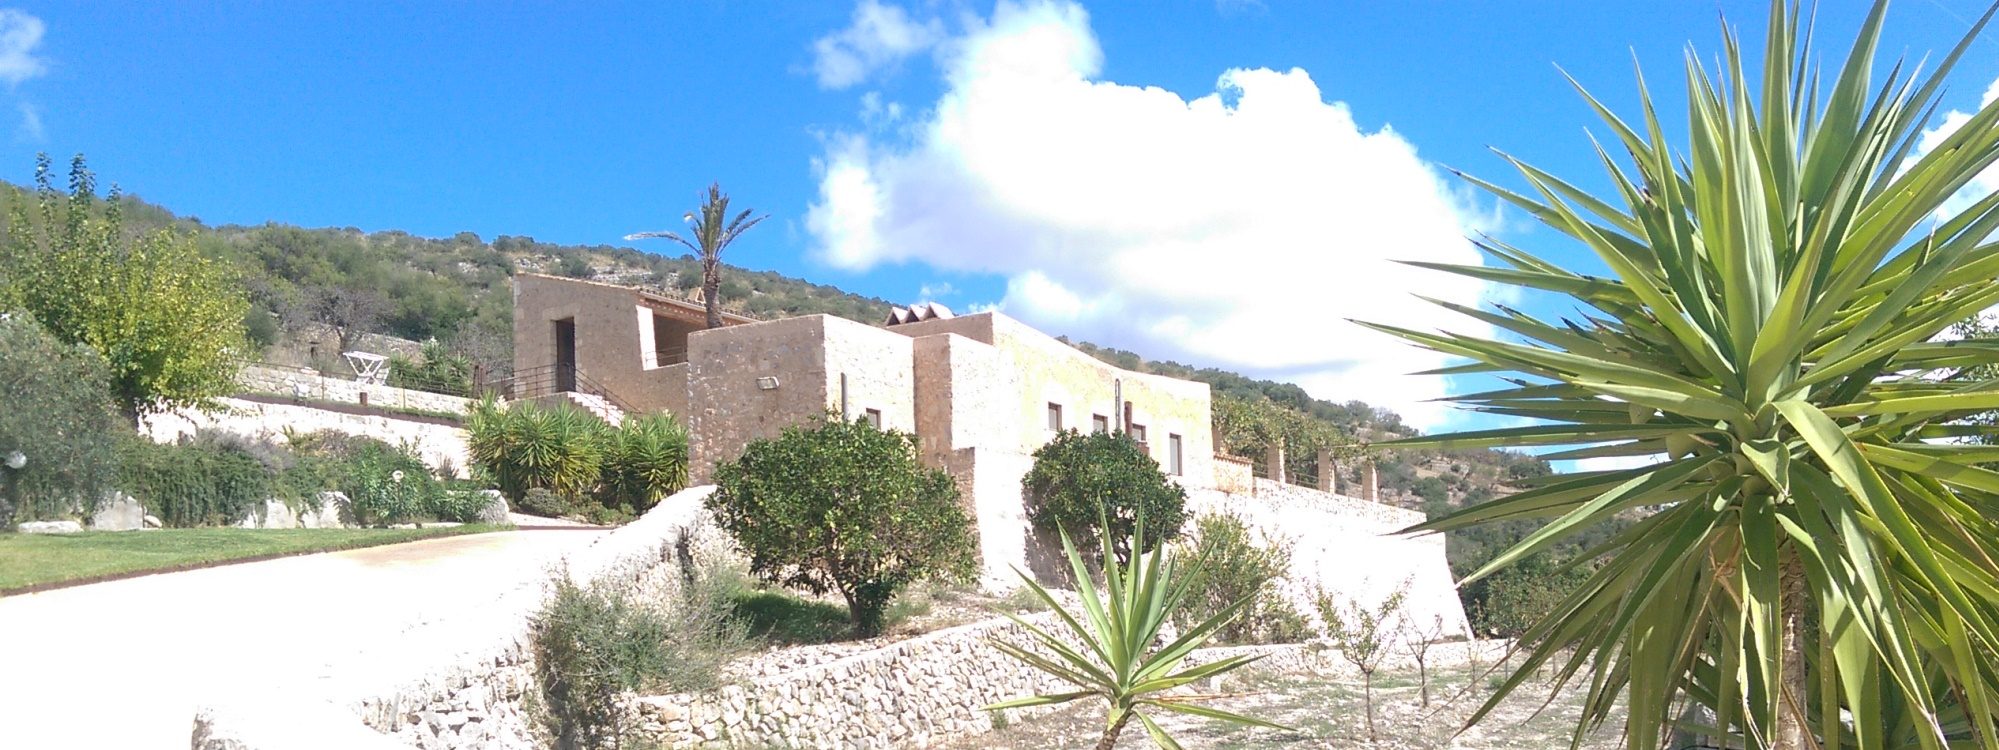 Ses Voltes, aussergewöhnliche, herrliche Finca in den Hügeln von Sant Llorenç für bis 16 Personen